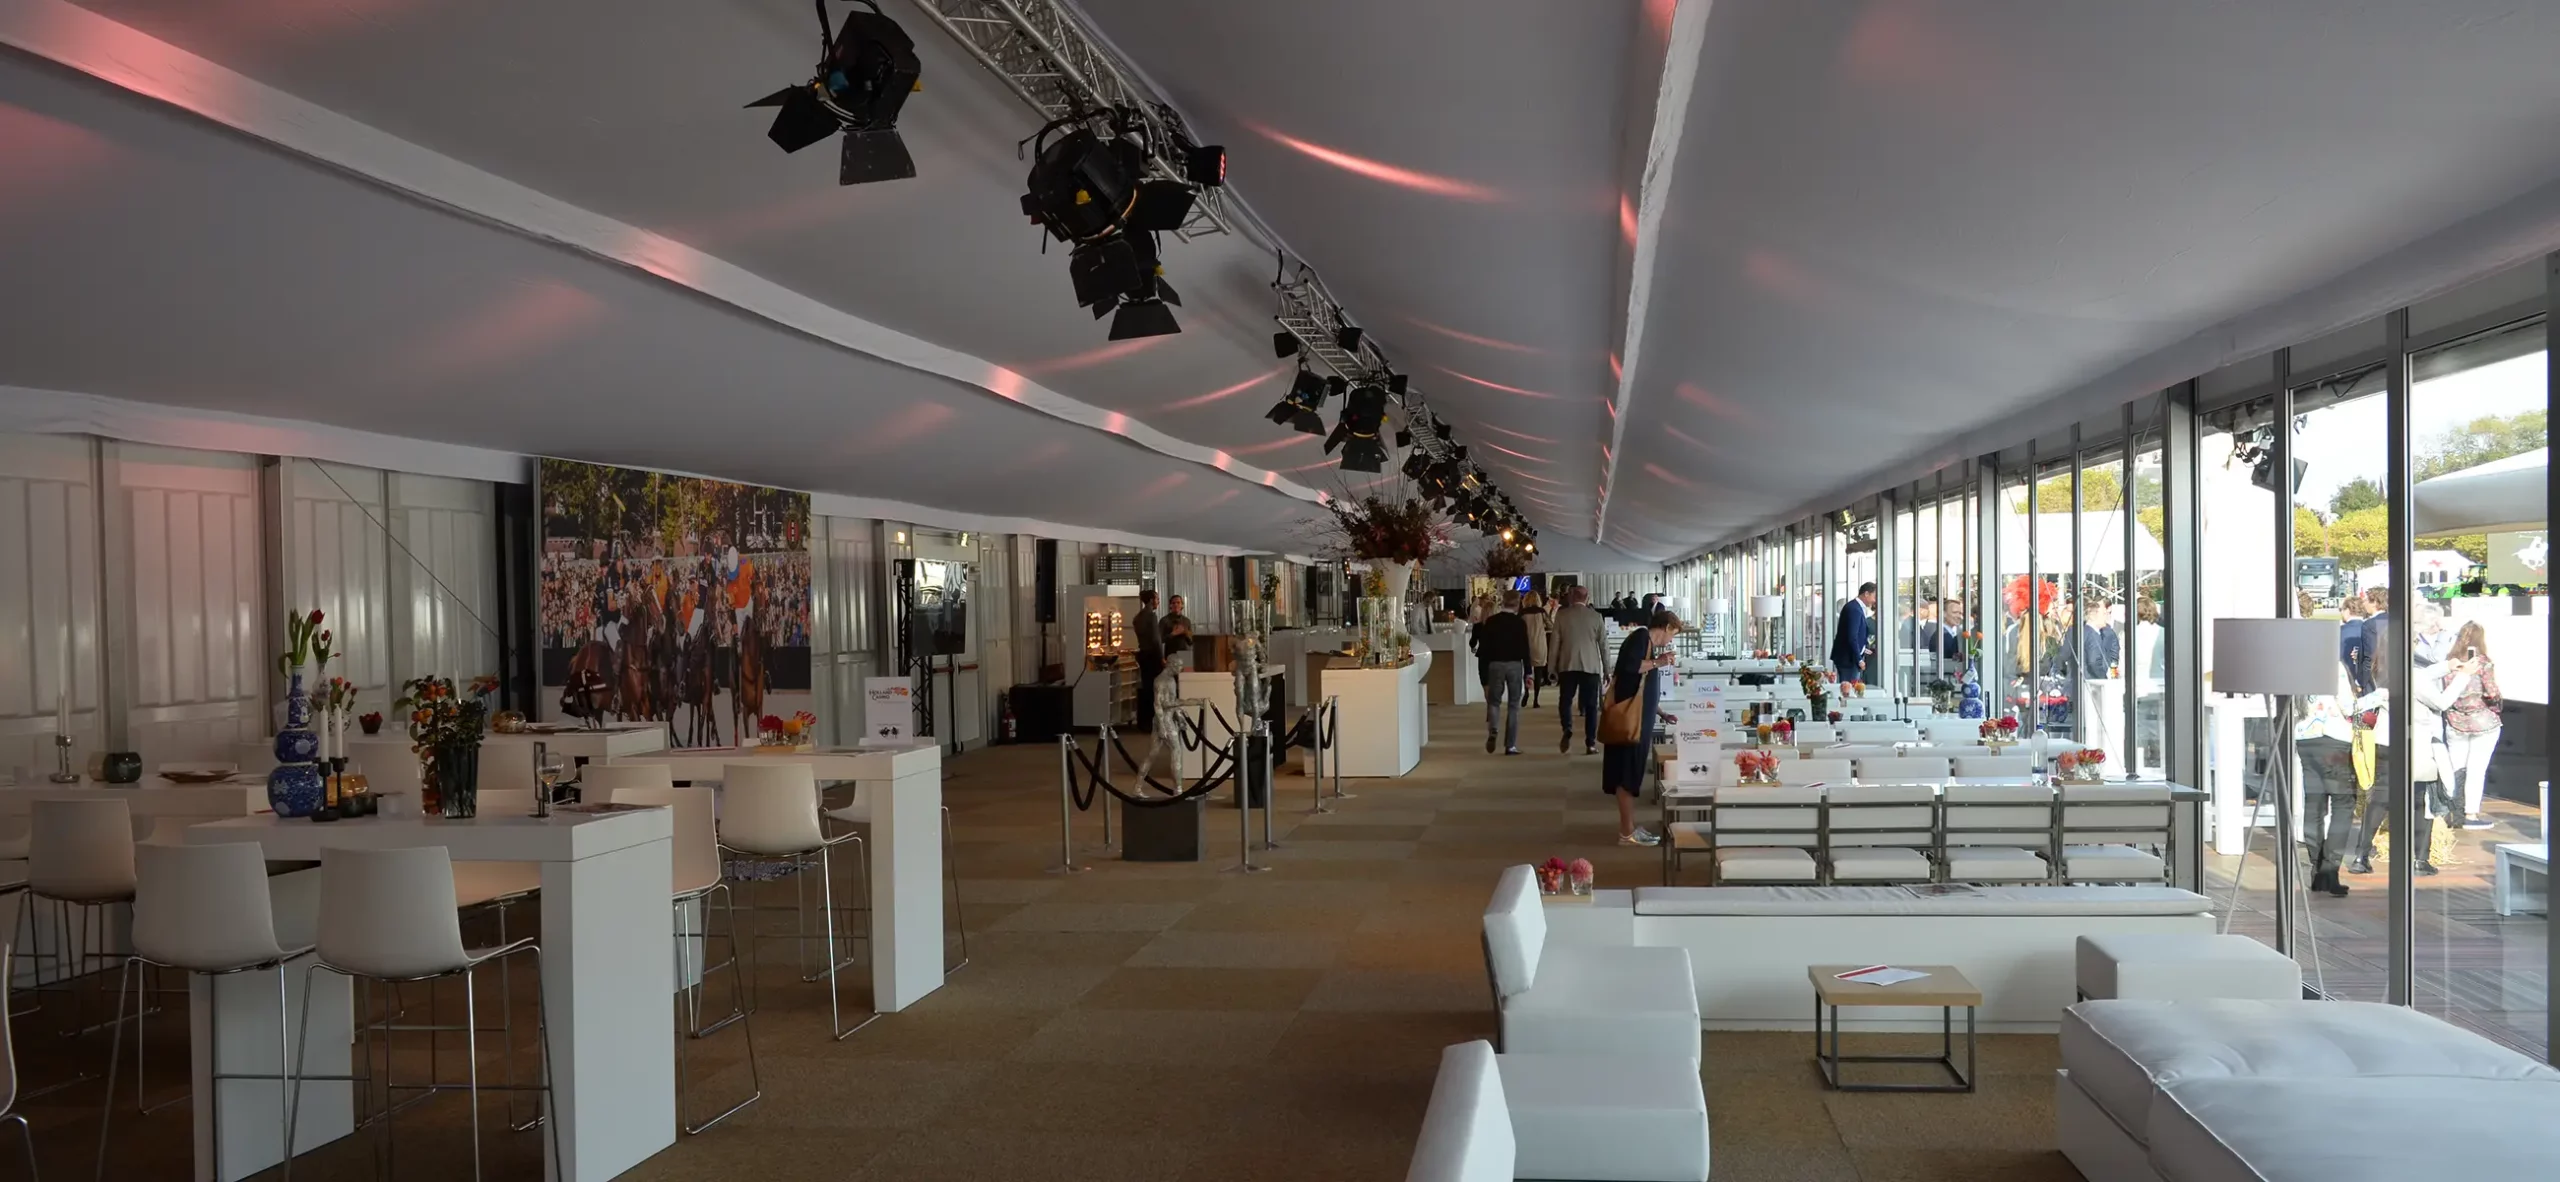 Zelthalle Alu Pavillon für große Firmenevents und Veranstaltungen - Hospitality für Gäste und Besucher mit Glaspaneelen für Panoramablick